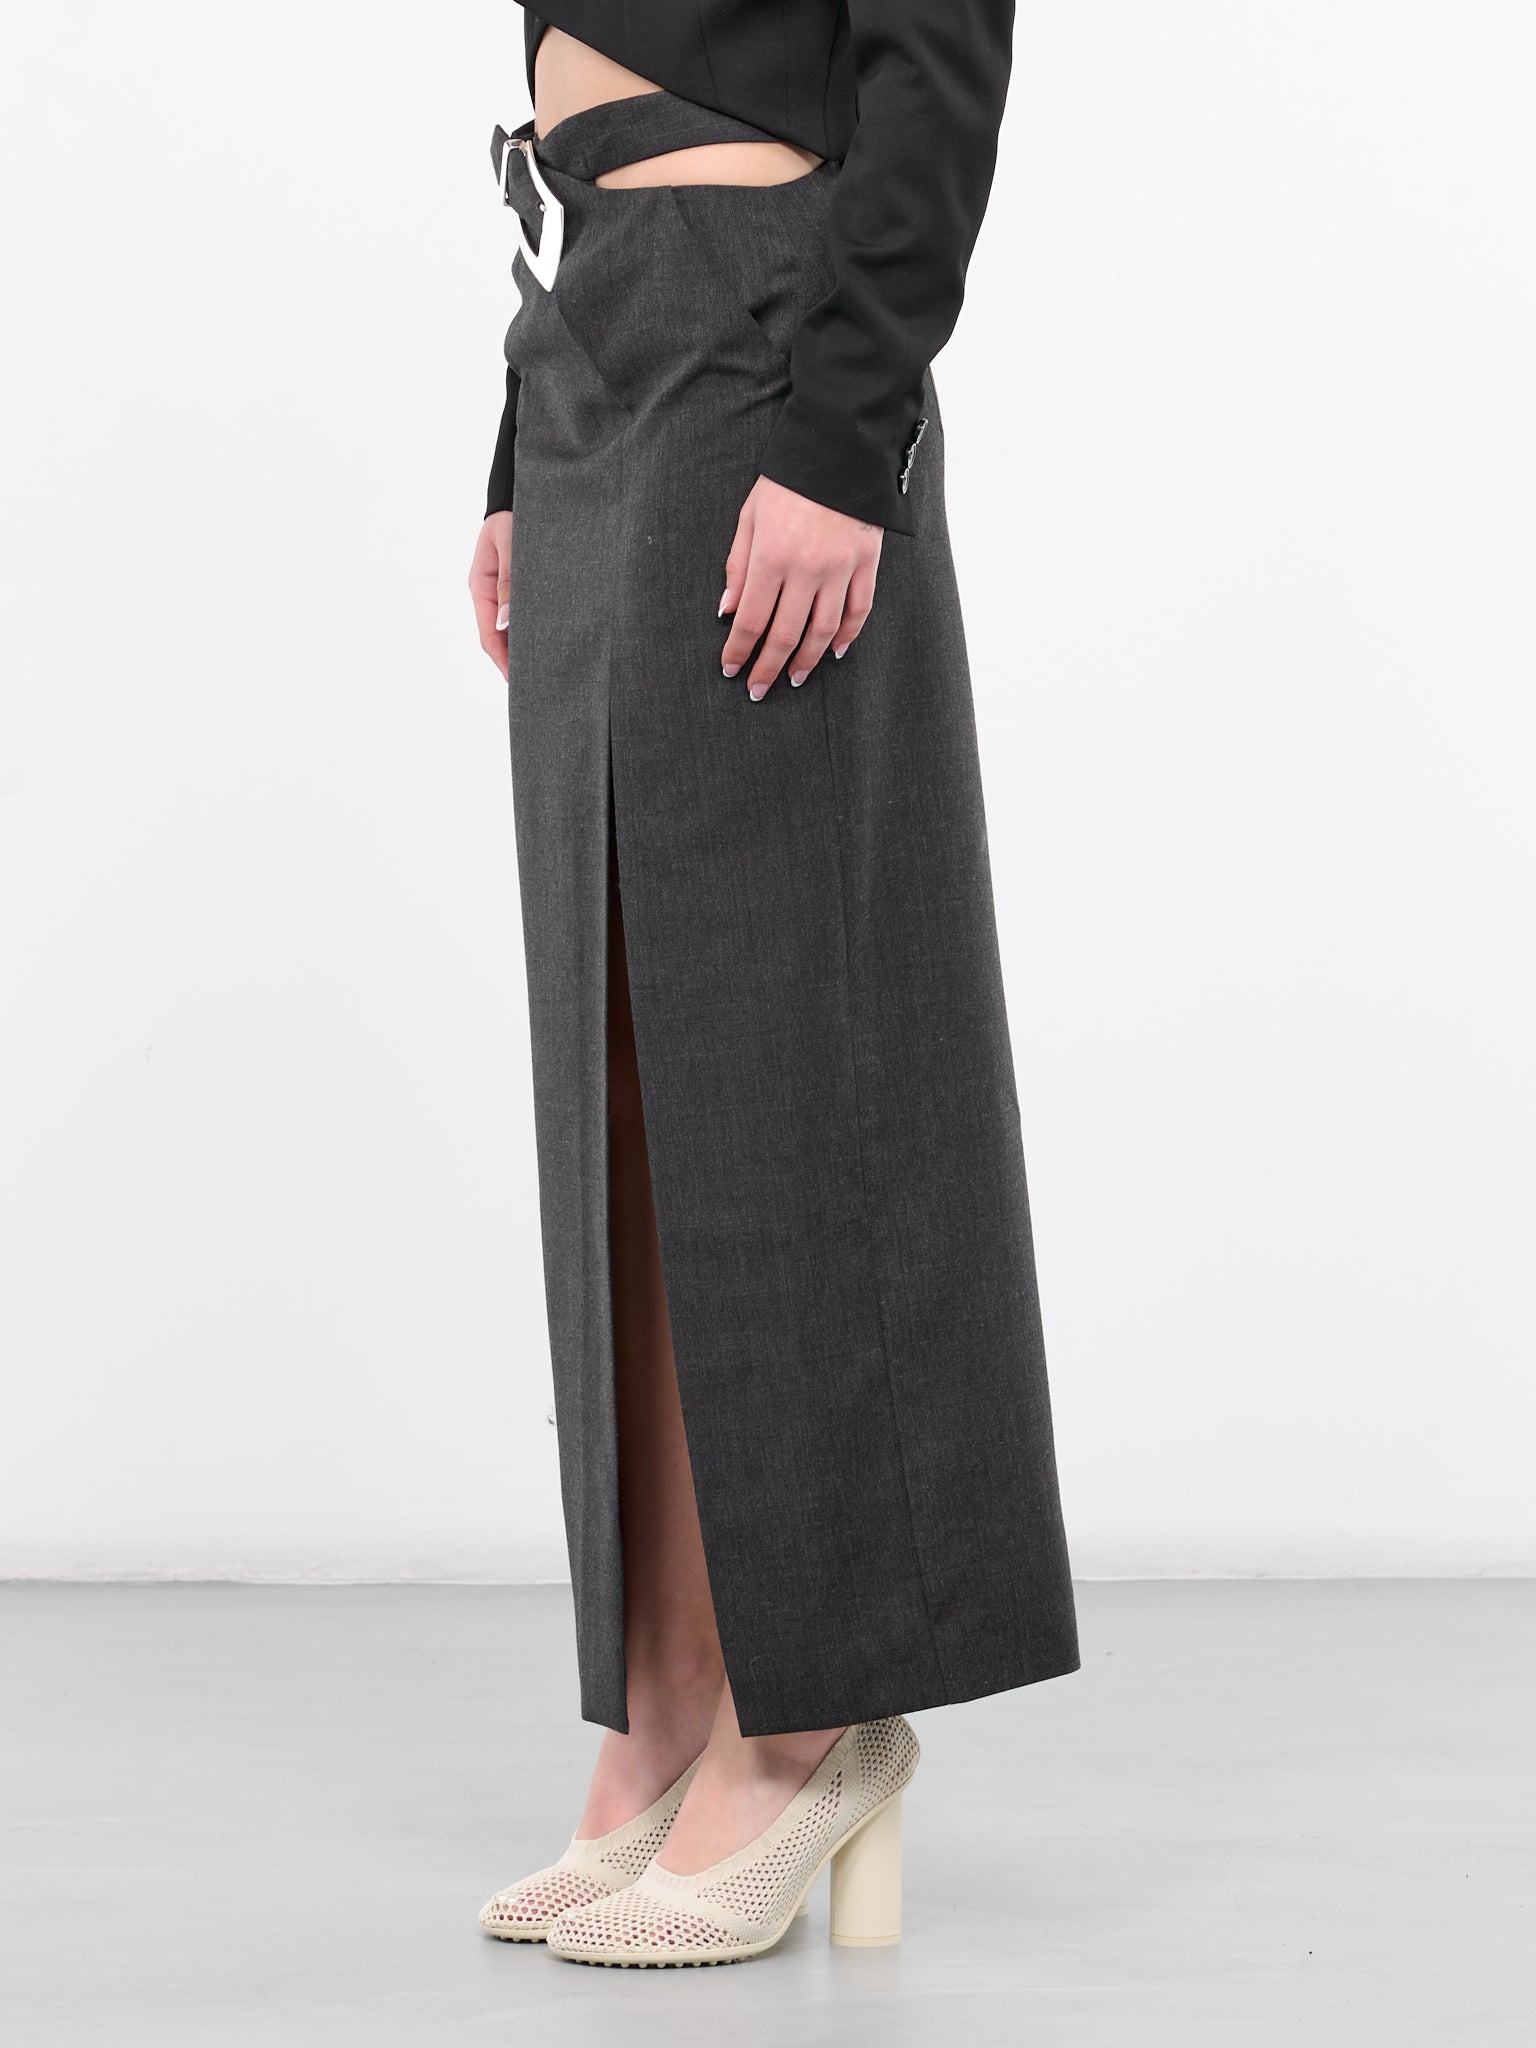 Buckled Skirt (SKIRT-6-GREY)